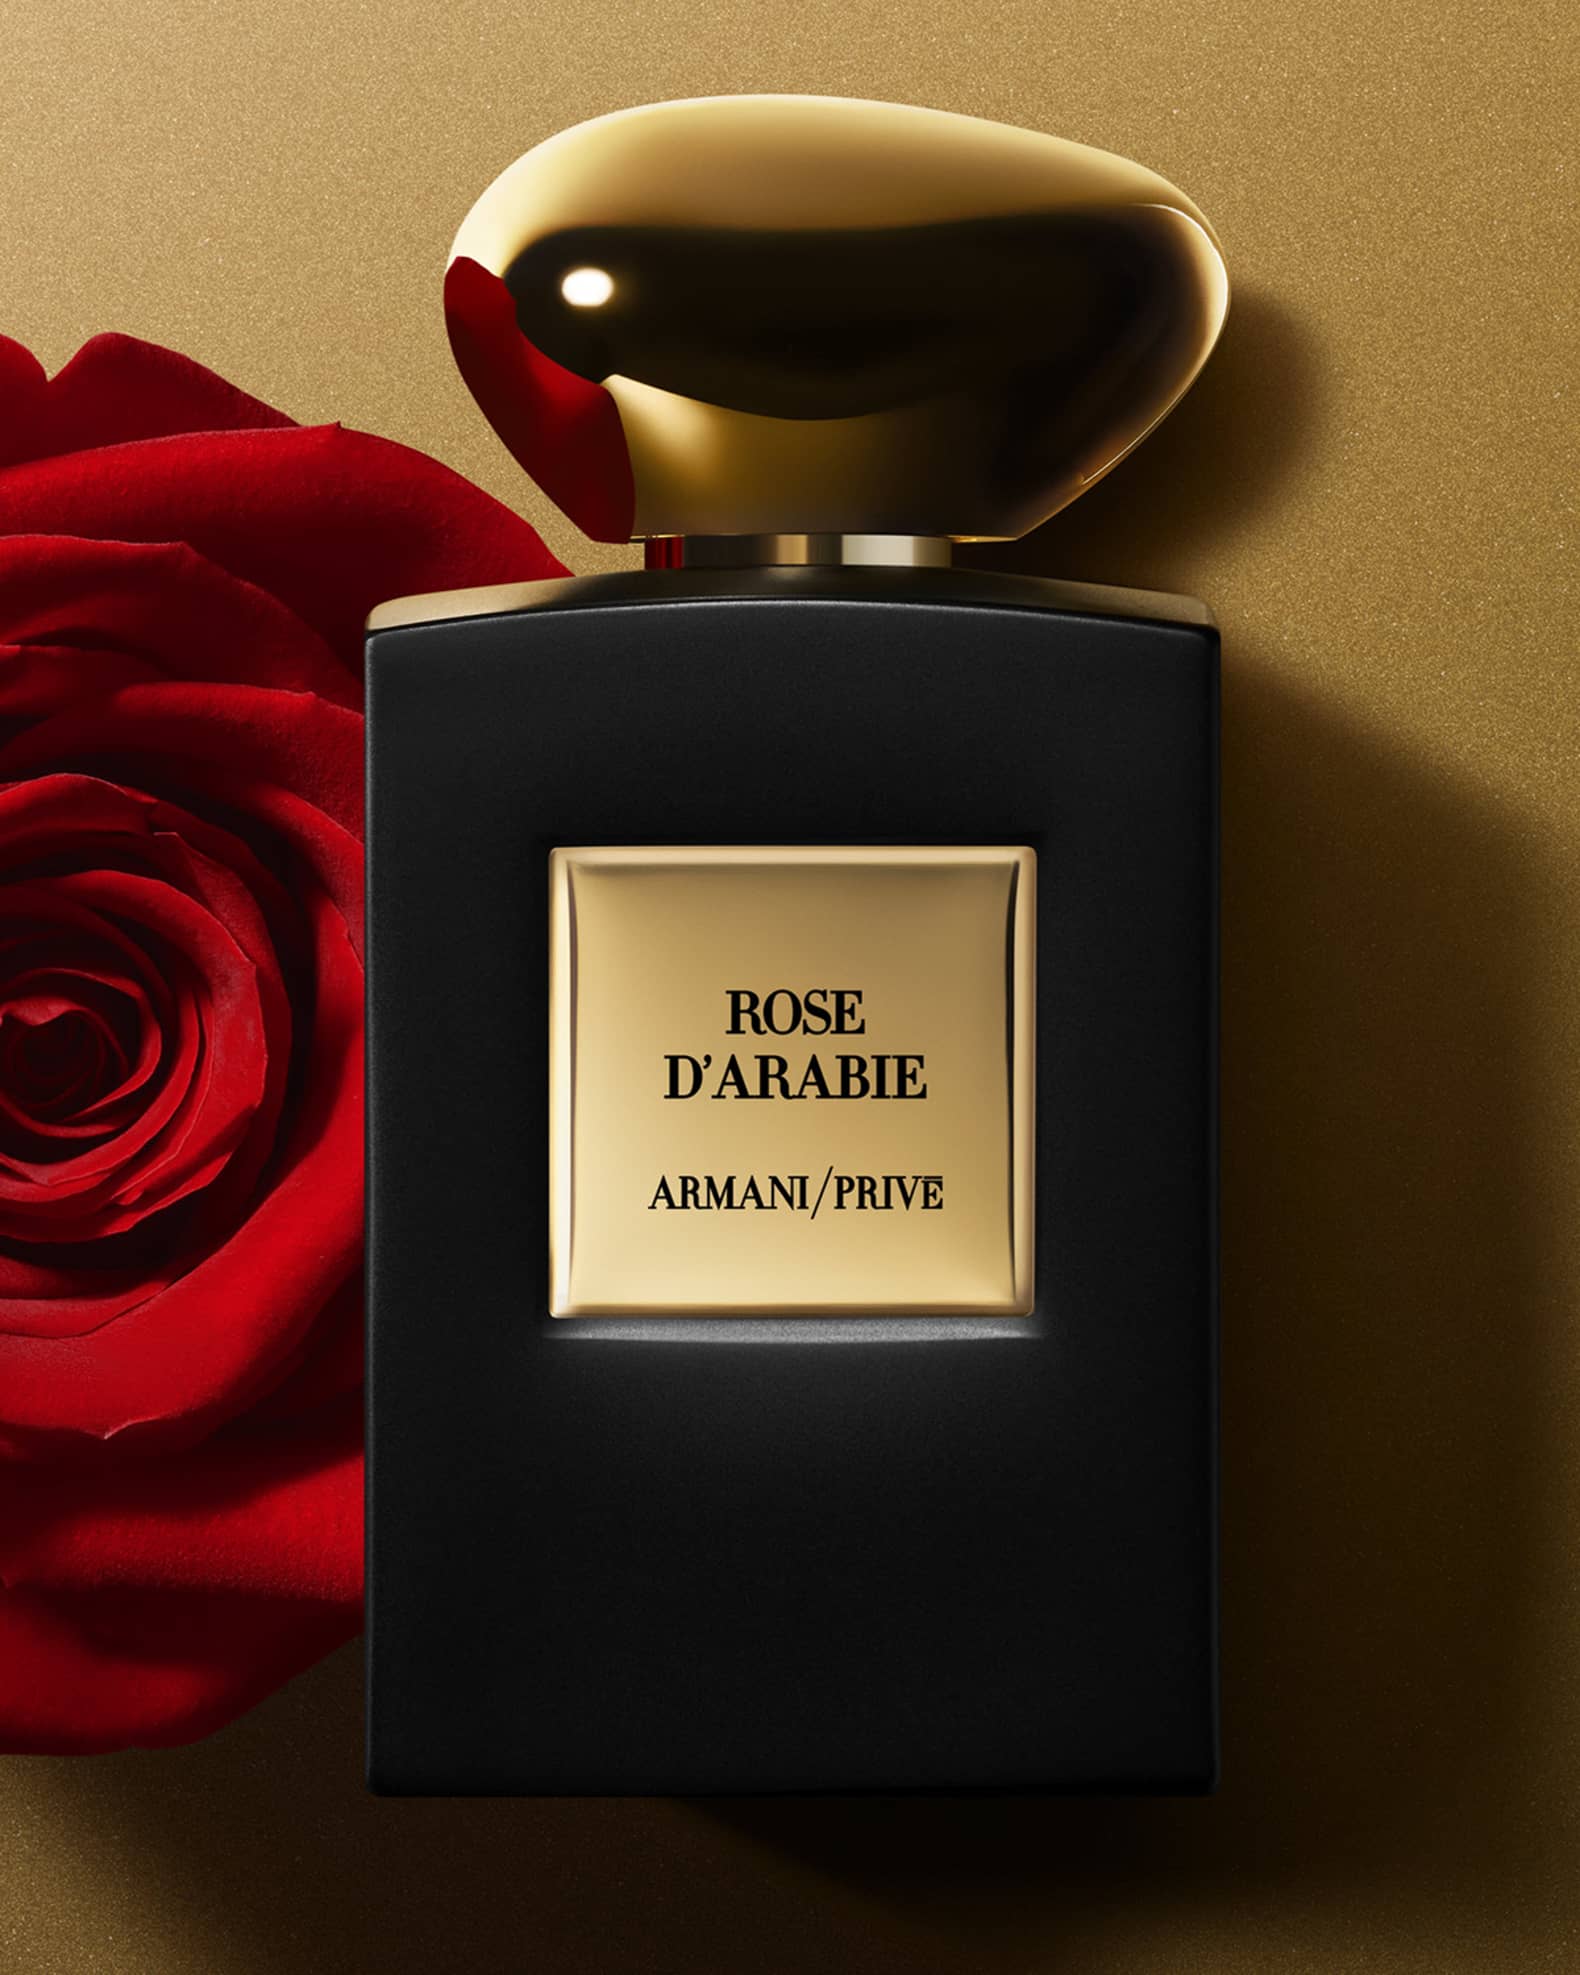 Armani prive rose. Giorgio Armani Armani prive Rose d'Arabie EDP, 100. Армани Rose d Arabie. Armani prive Rose d'Arabie. Armani Rose Arabia.